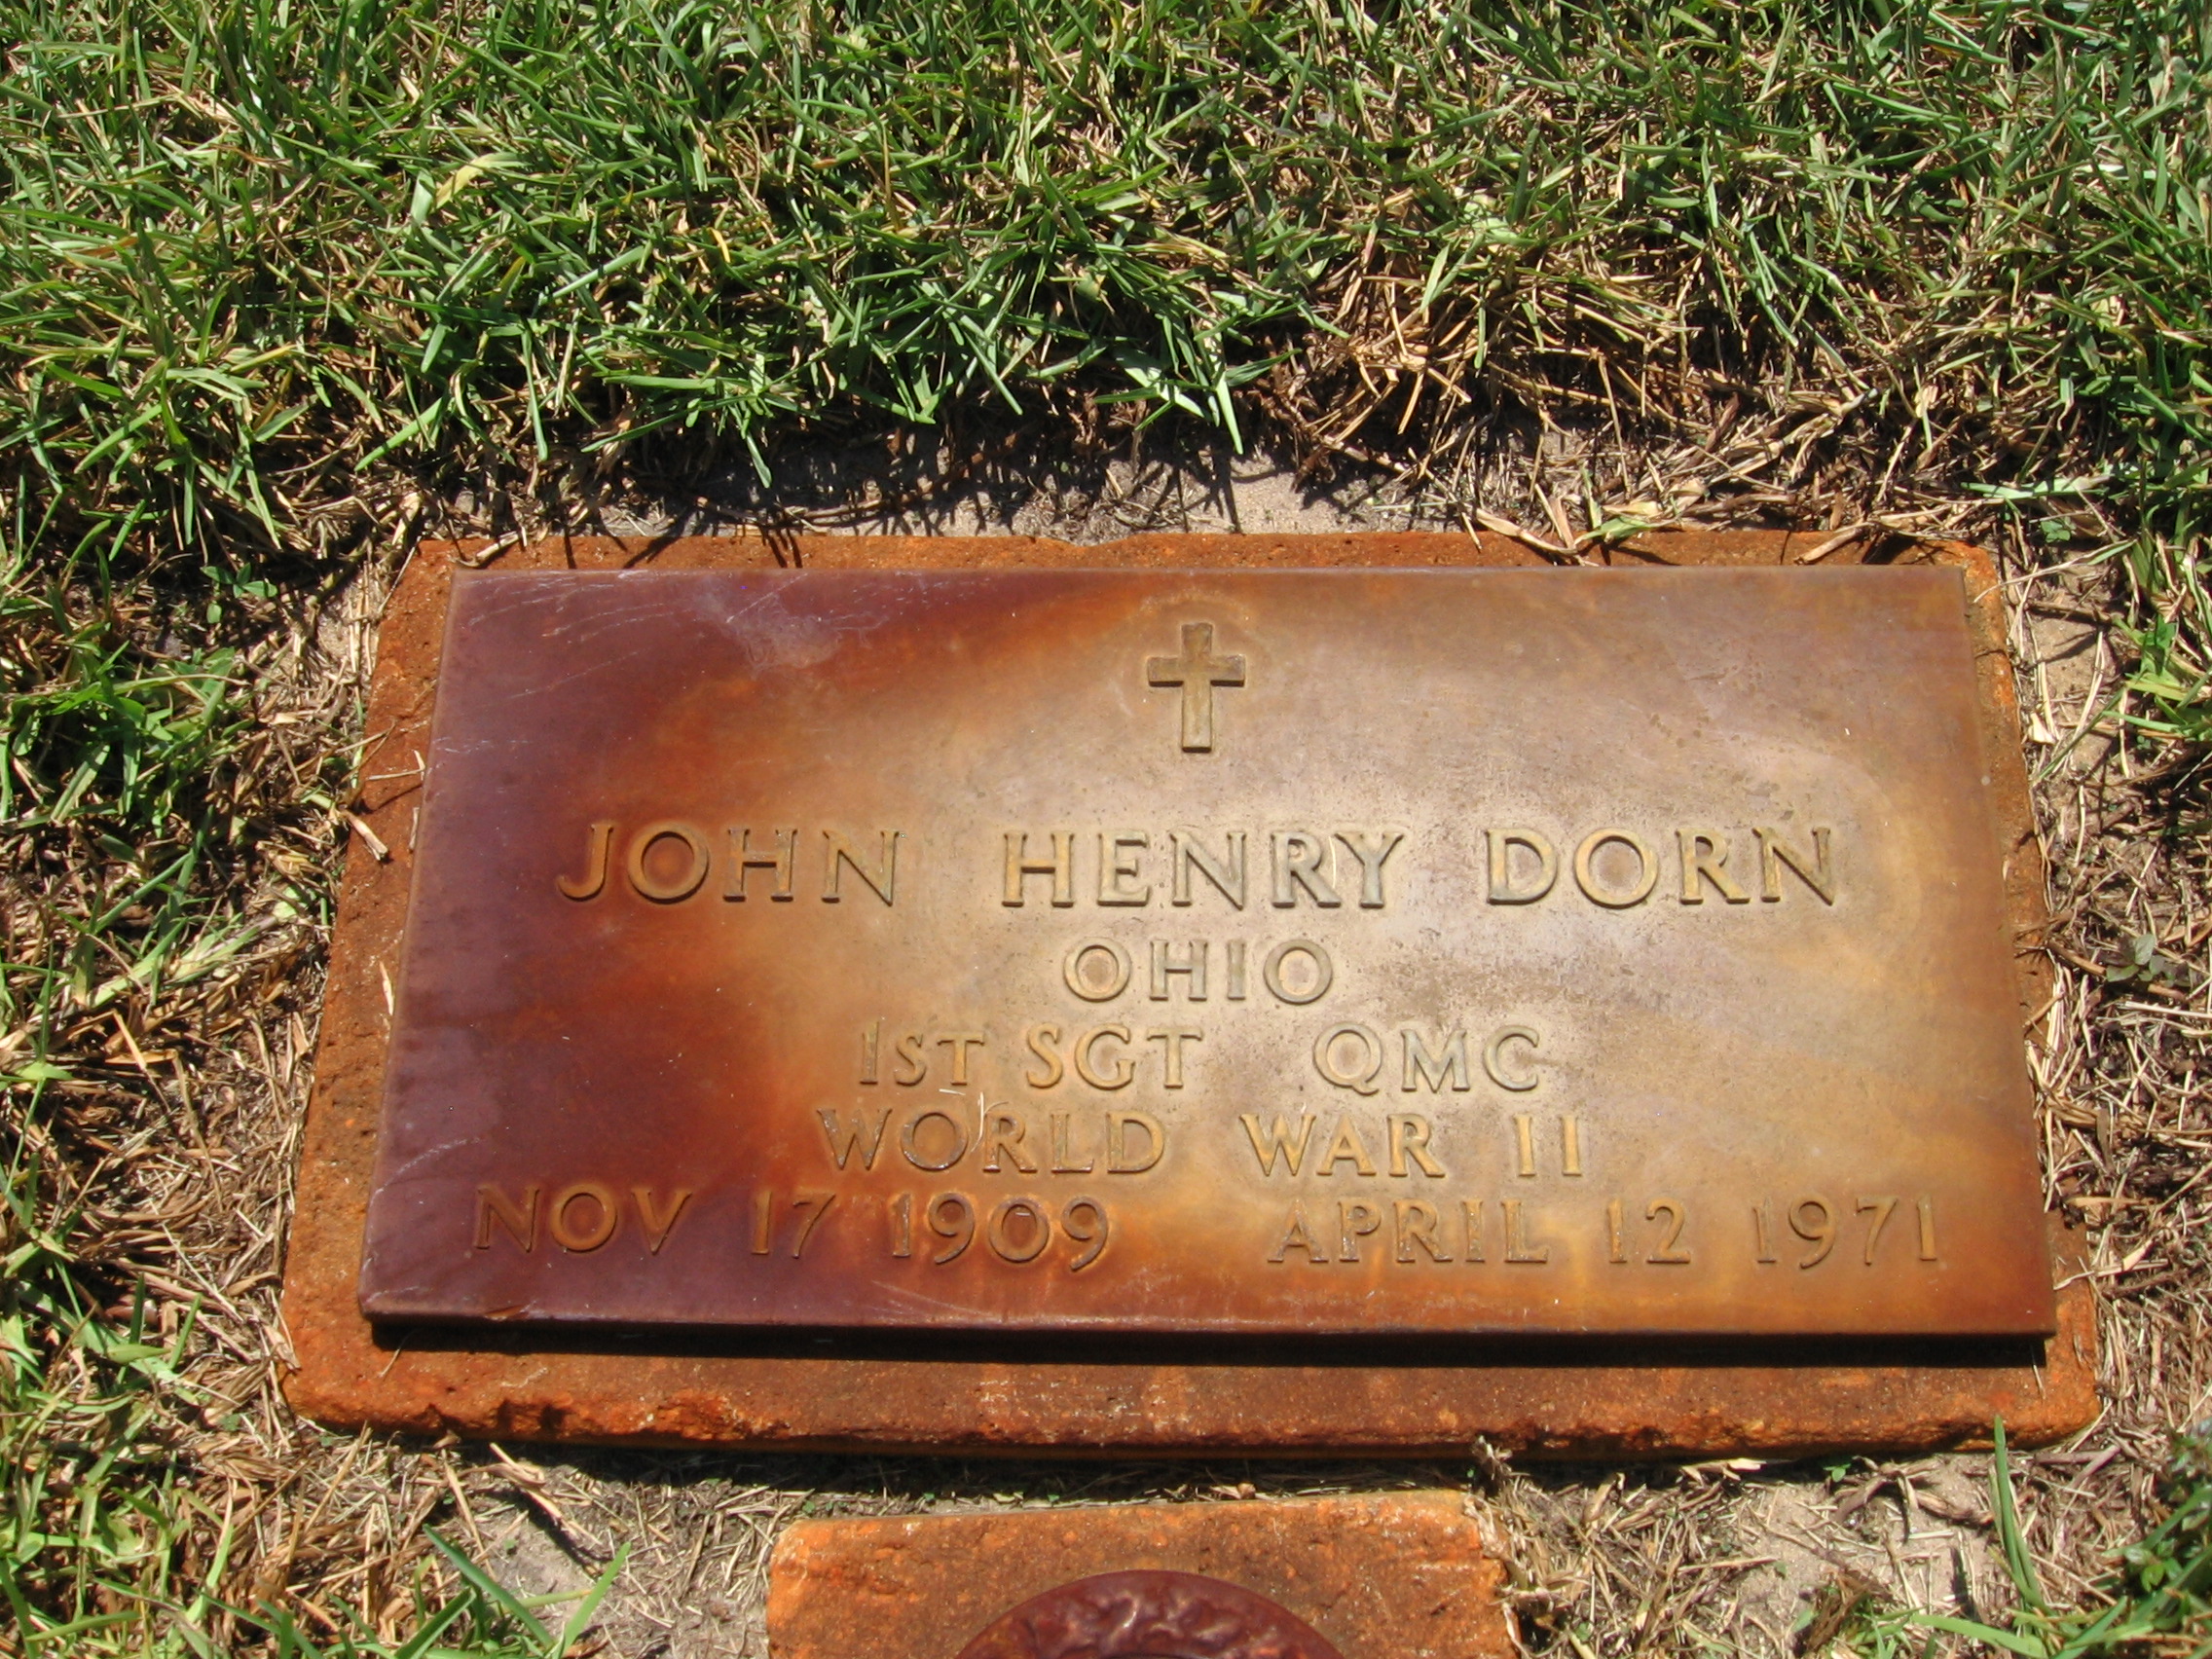 Sgt John Henry Dorn